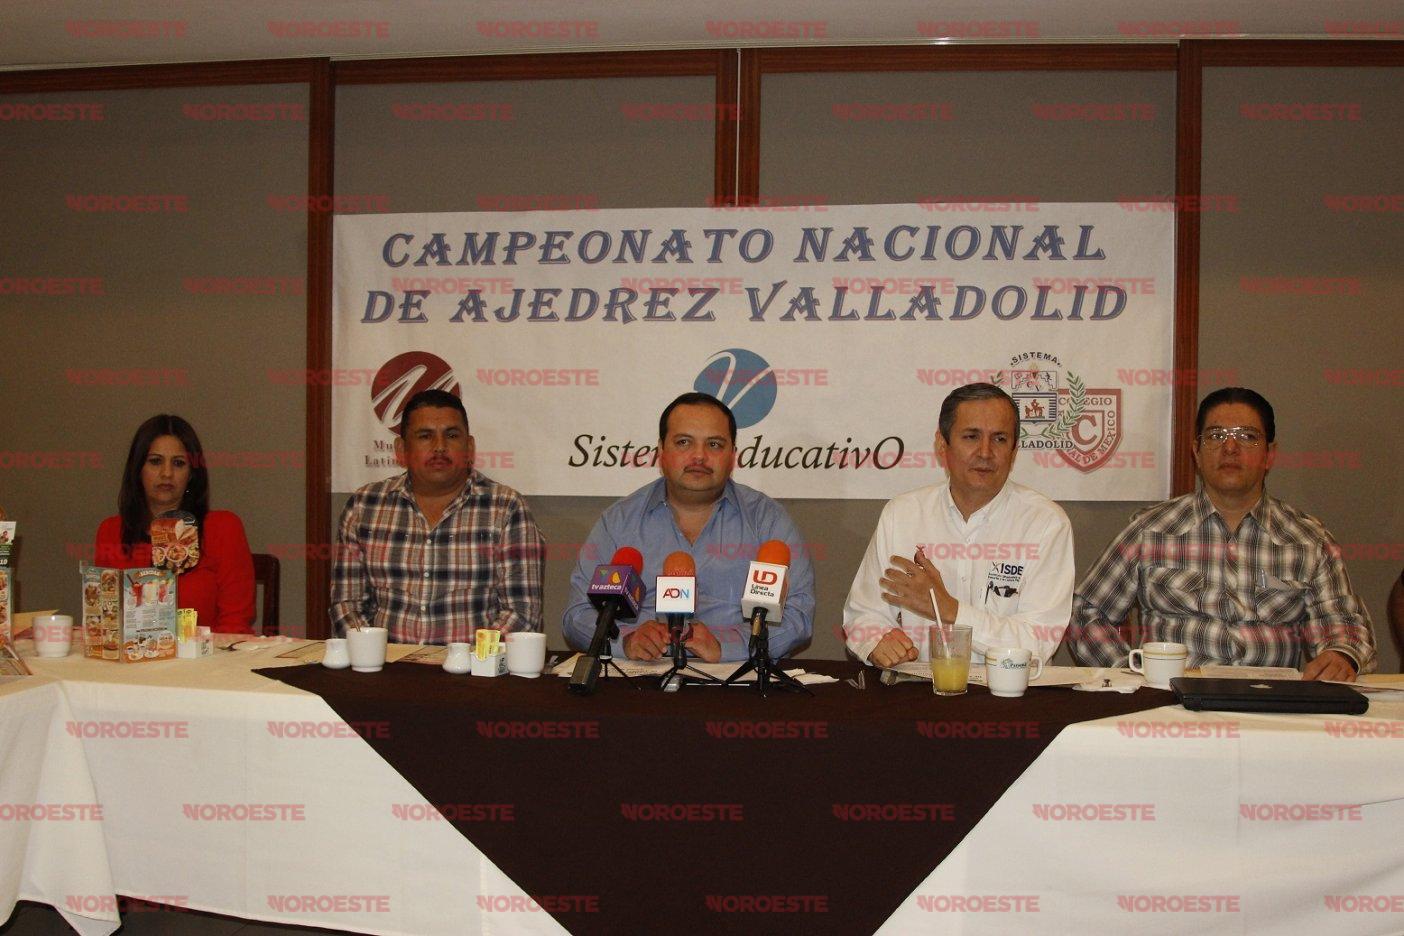 El Sistema Educativo Valladolid confirma su Campeonato de Ajedrez - Noroeste